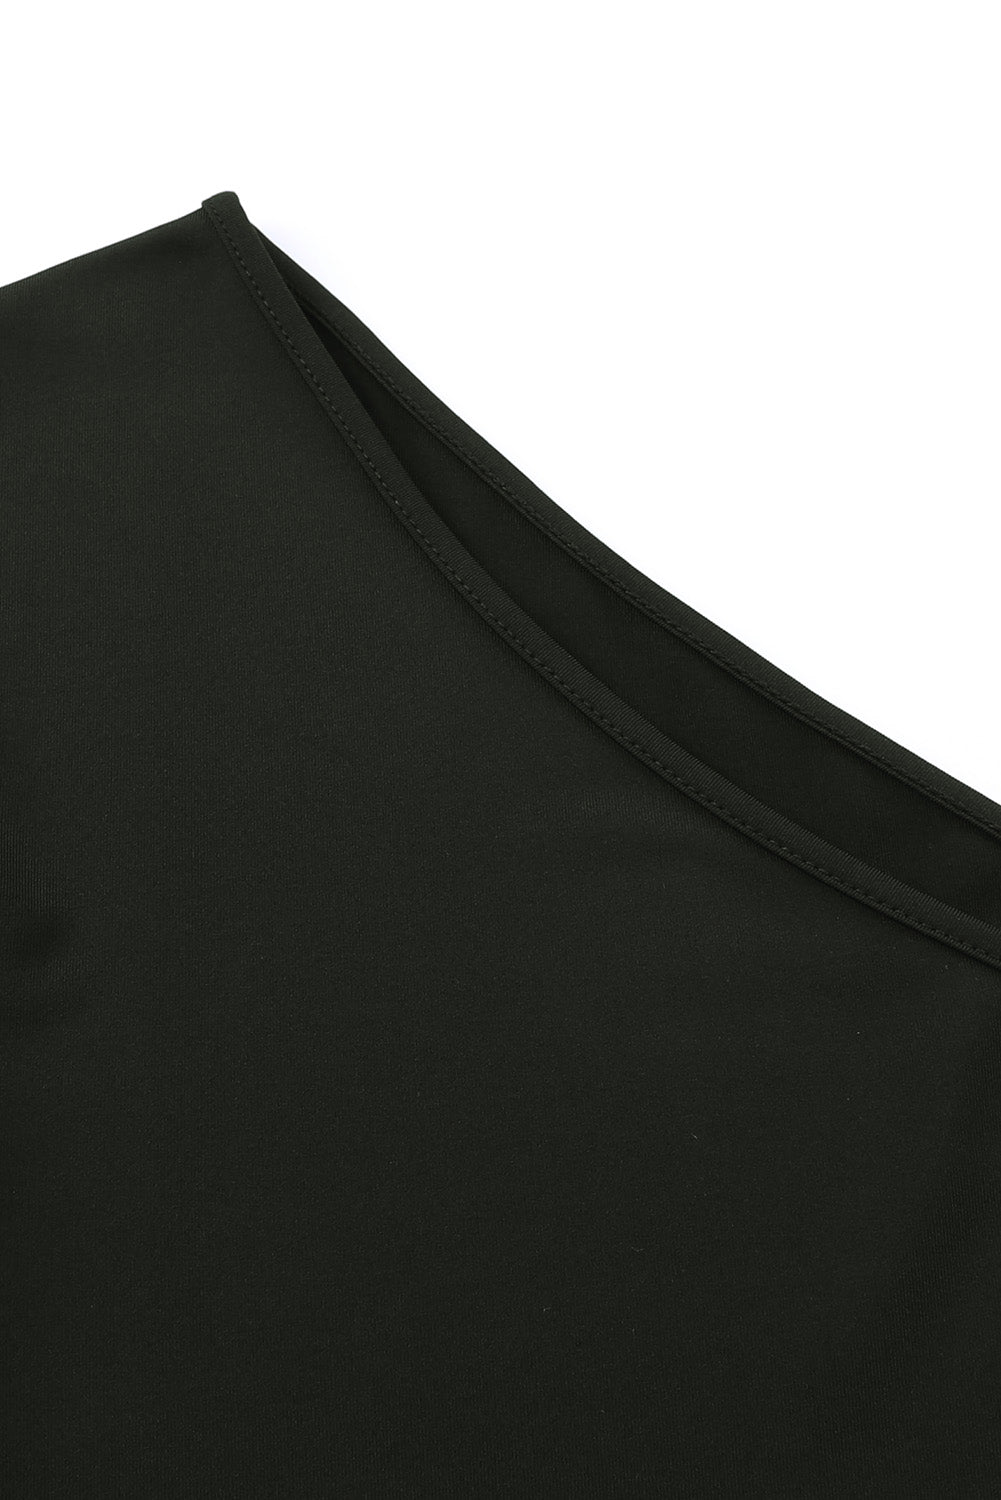 Black One Shoulder Fringed Long Sleeve Bodysuit